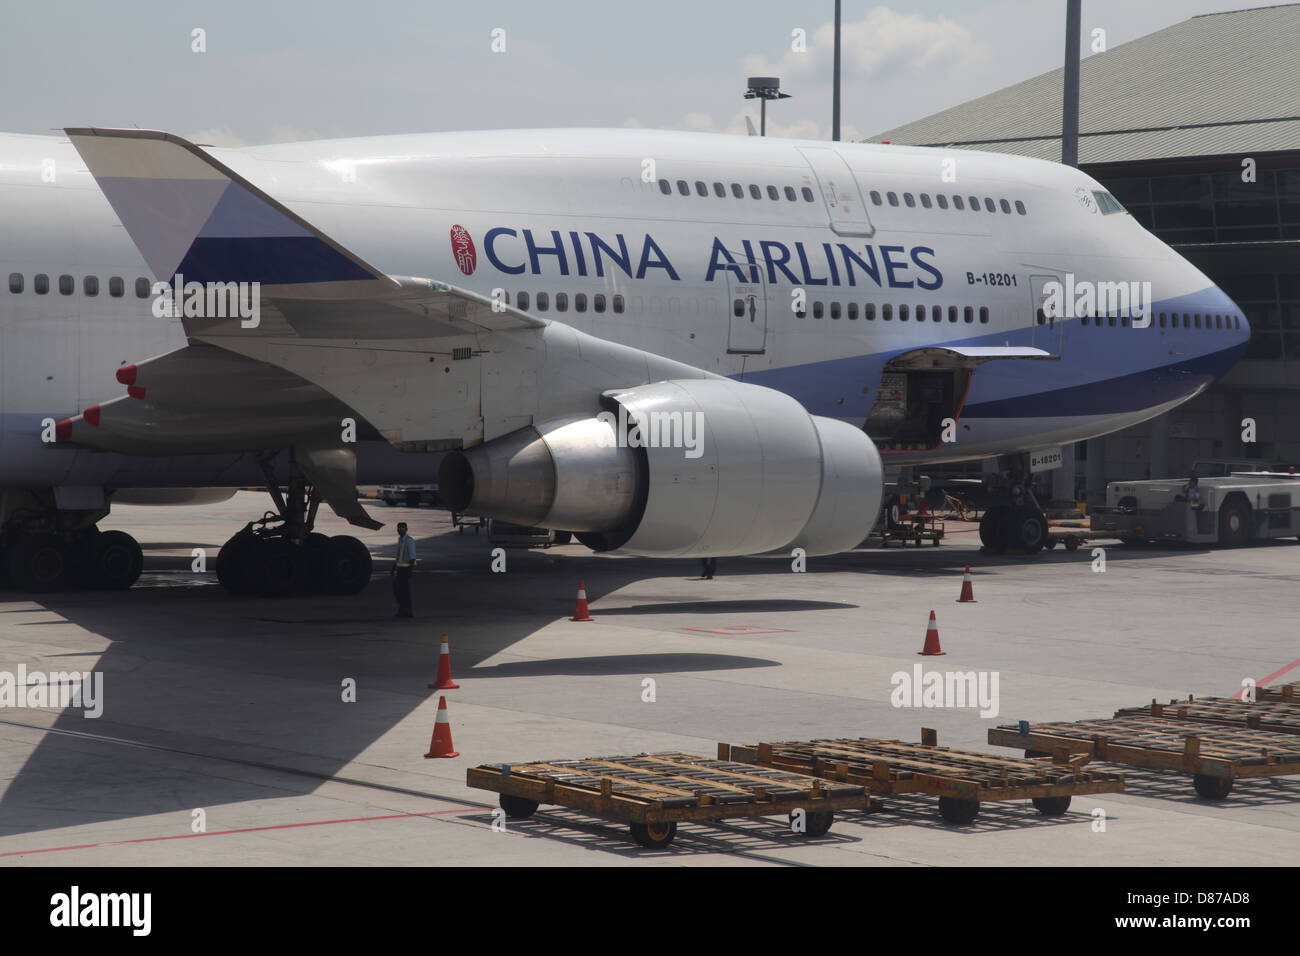 China Airlines à l'aéroport de Changi Singapour 747 Jumbo Banque D'Images